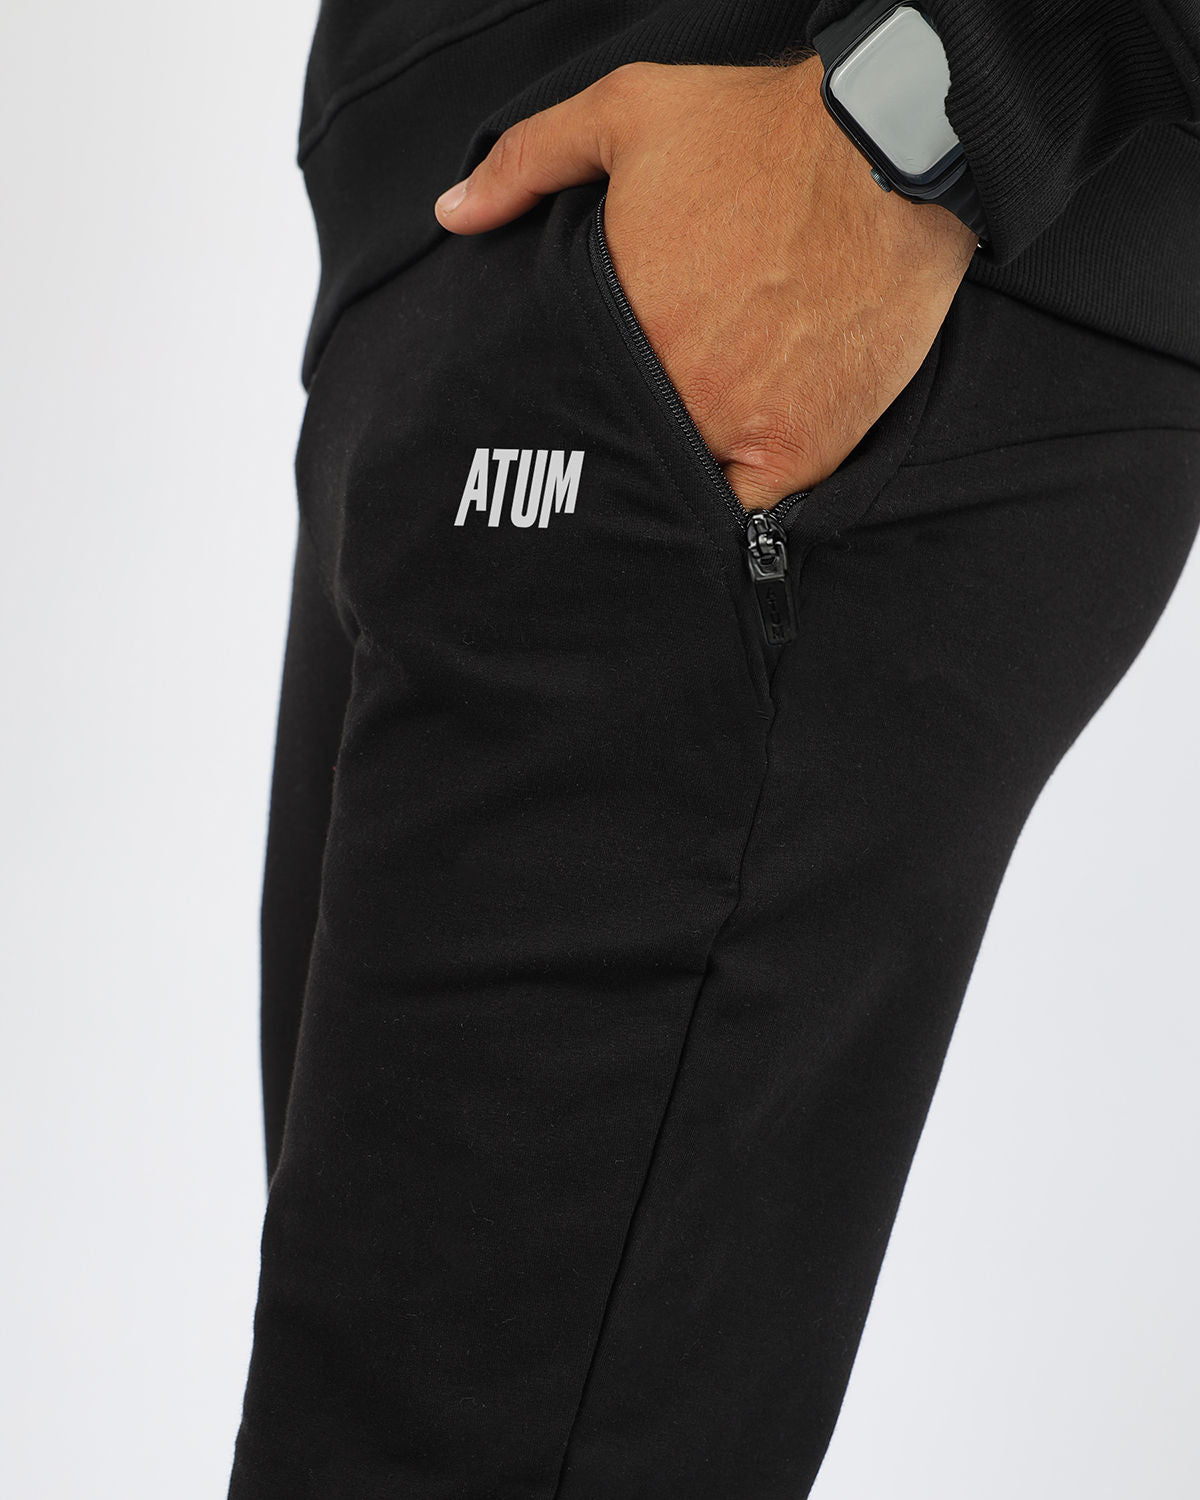 Atum Men's Essential Jogger Pants - Atum Egypt #